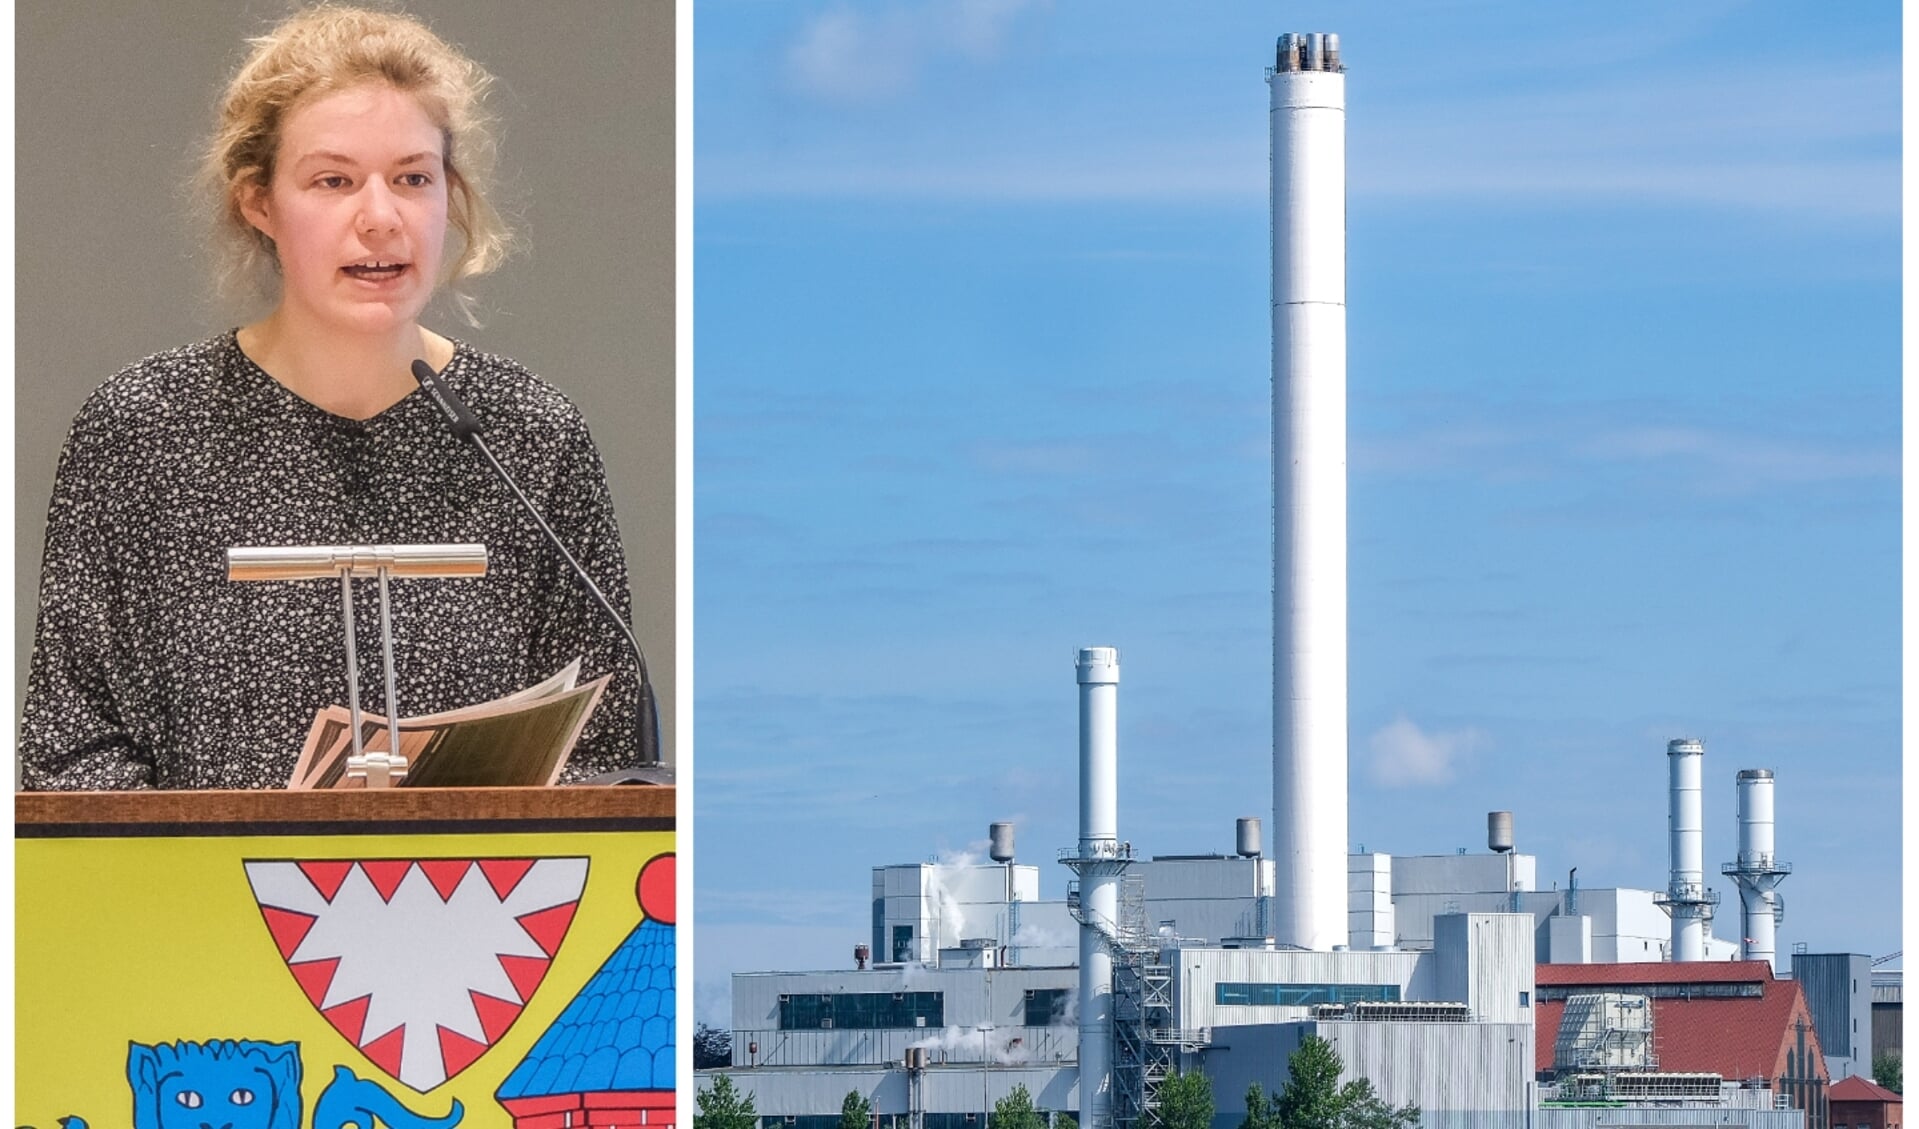 Die Stadtwerke Flensburg werden durch einen Ratsbeschluss zur Klimaneutralität bis 2035 verpflichtet. Clara Tempel (l.) vom Bündnis Klimabegehren richtete vor der Abstimmung einen eindringlichen Appell an die Politiker. Foto: